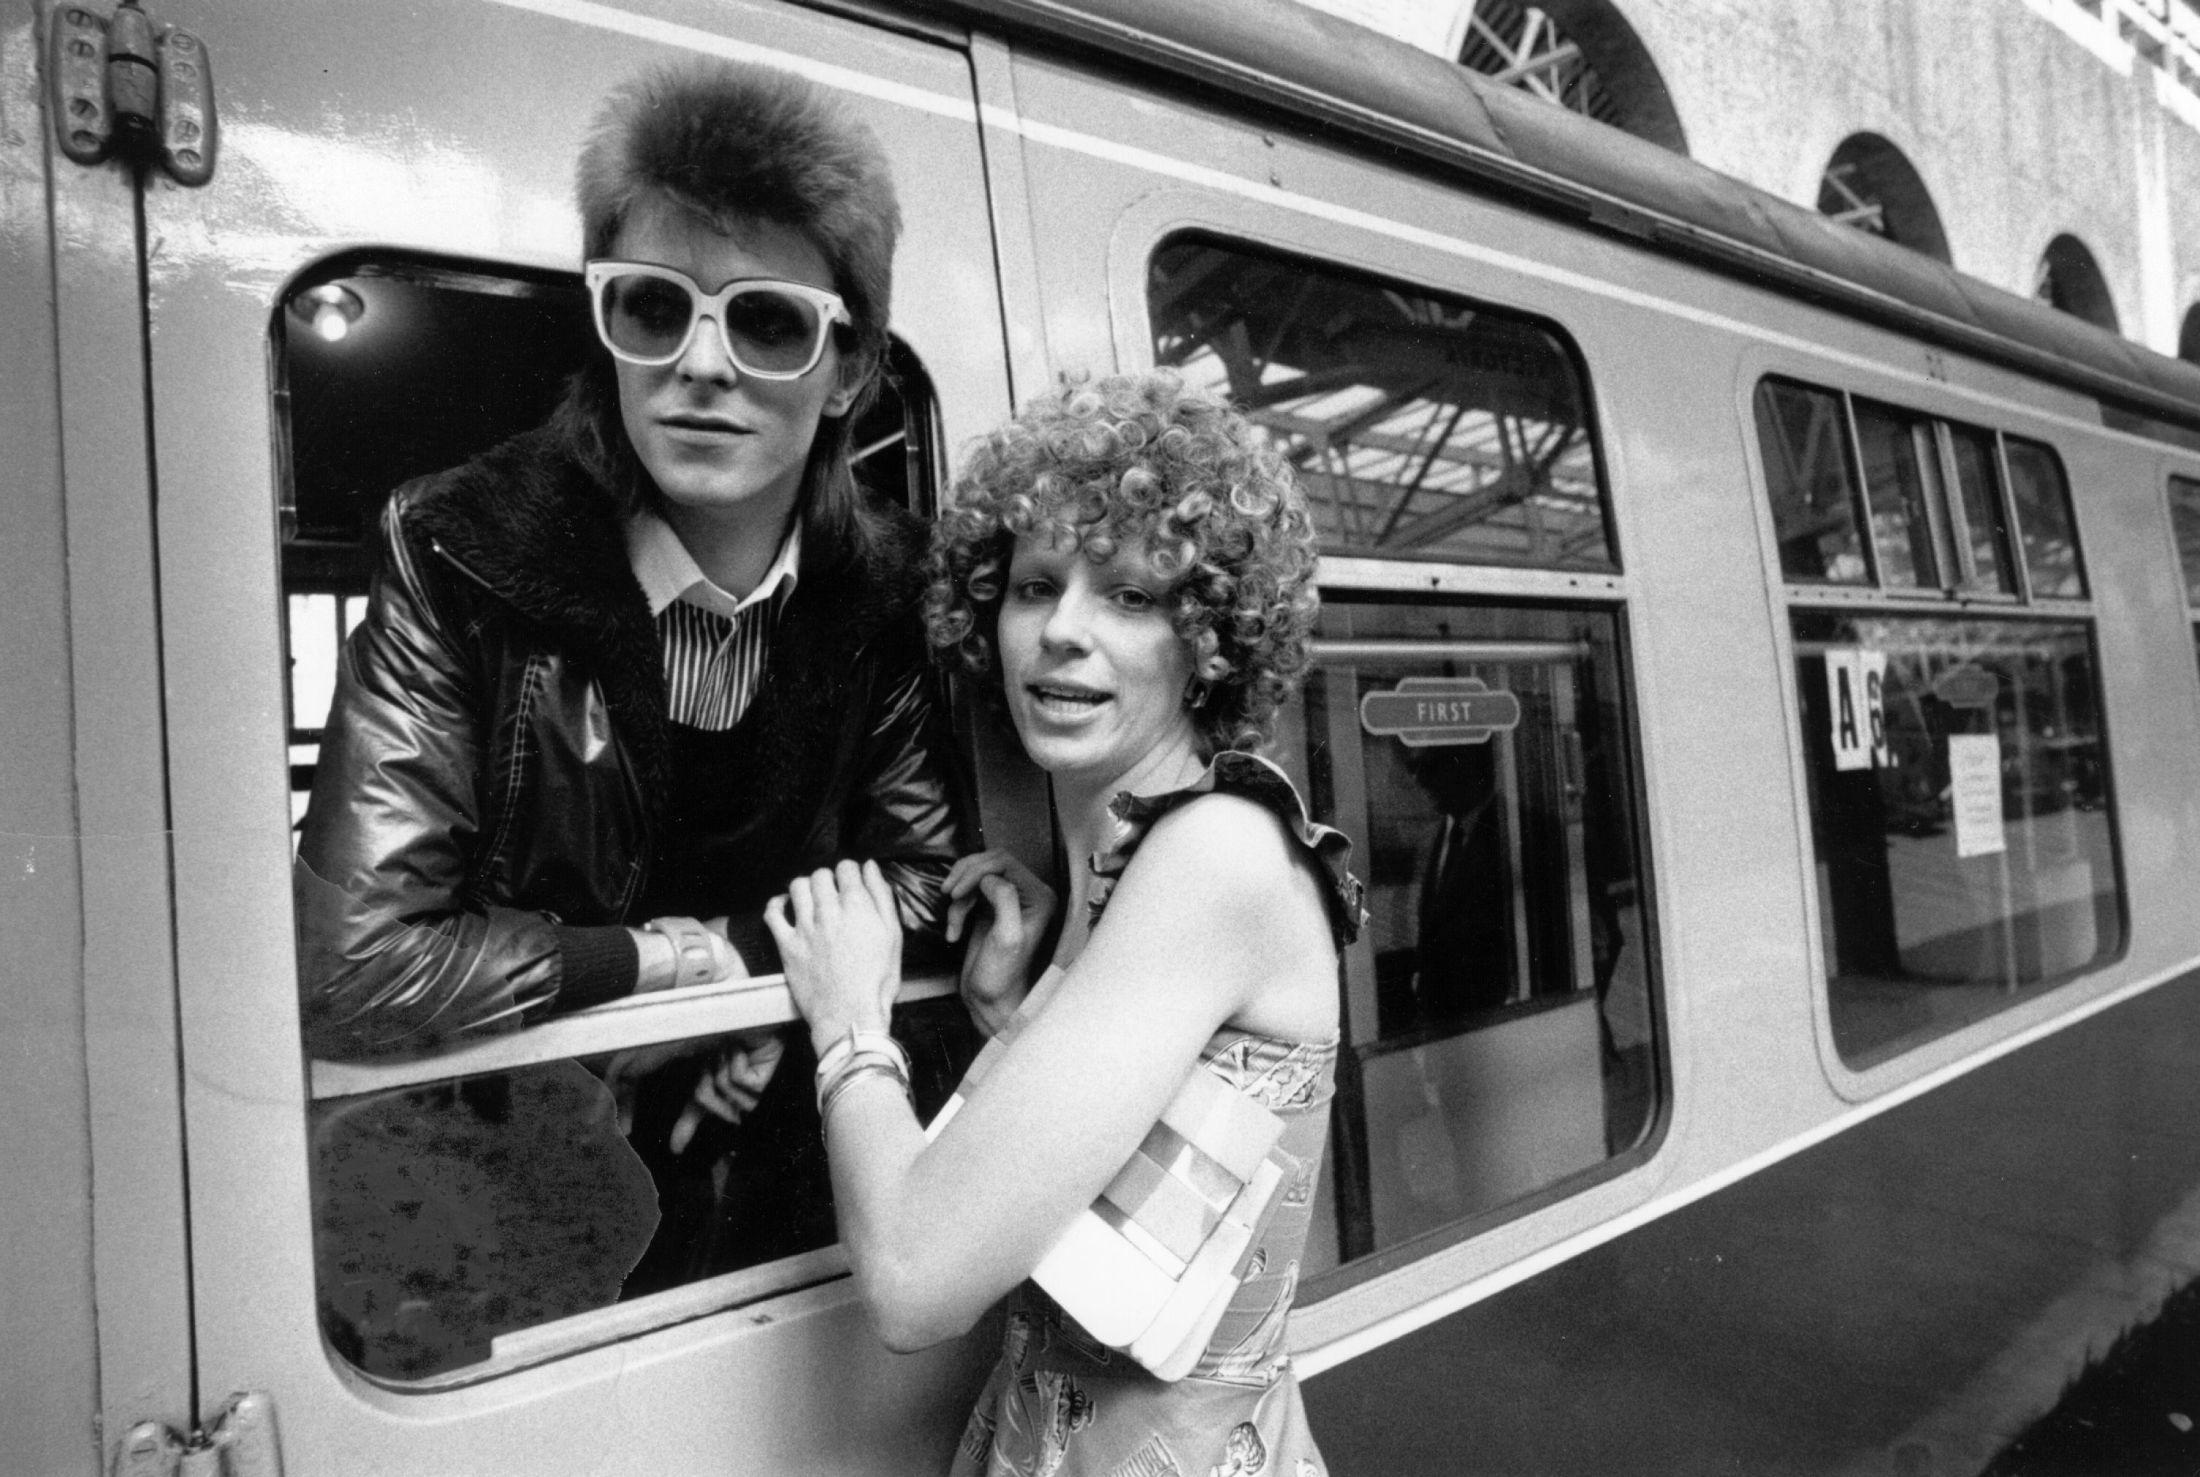 FARVEL: Angie Bowie vinker ektemannen David Bowie avsted på togstasjonen. Foto: Getty Images